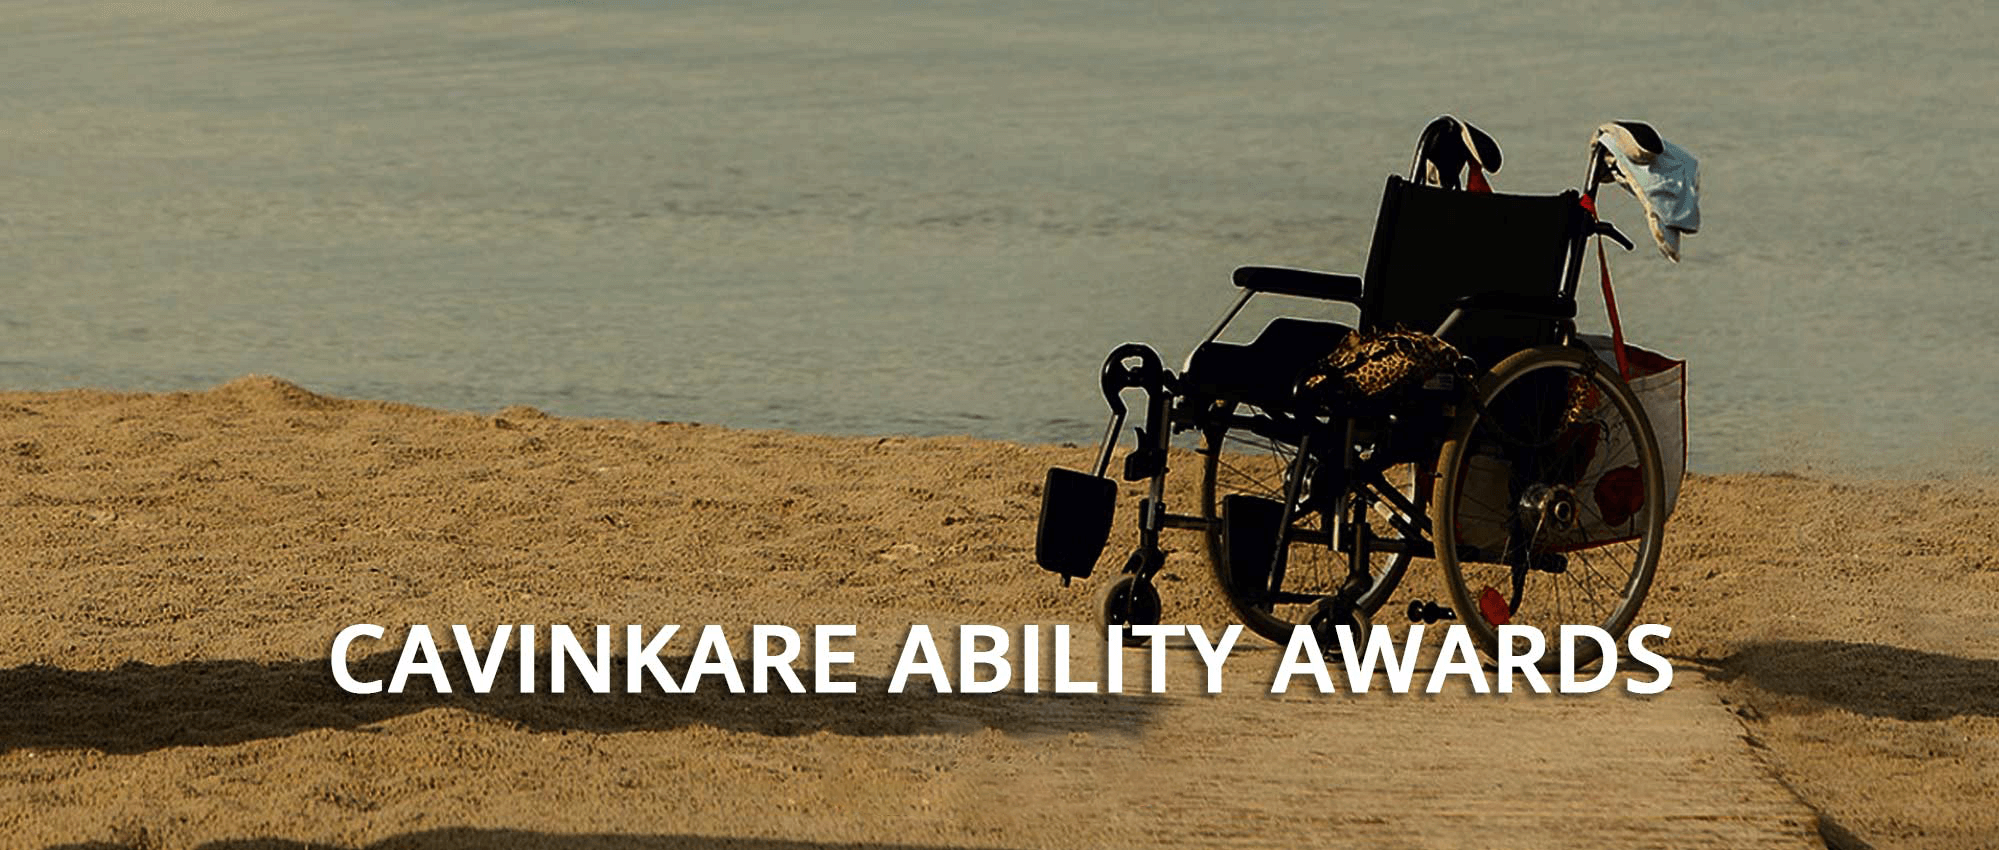 Ability Award 2015